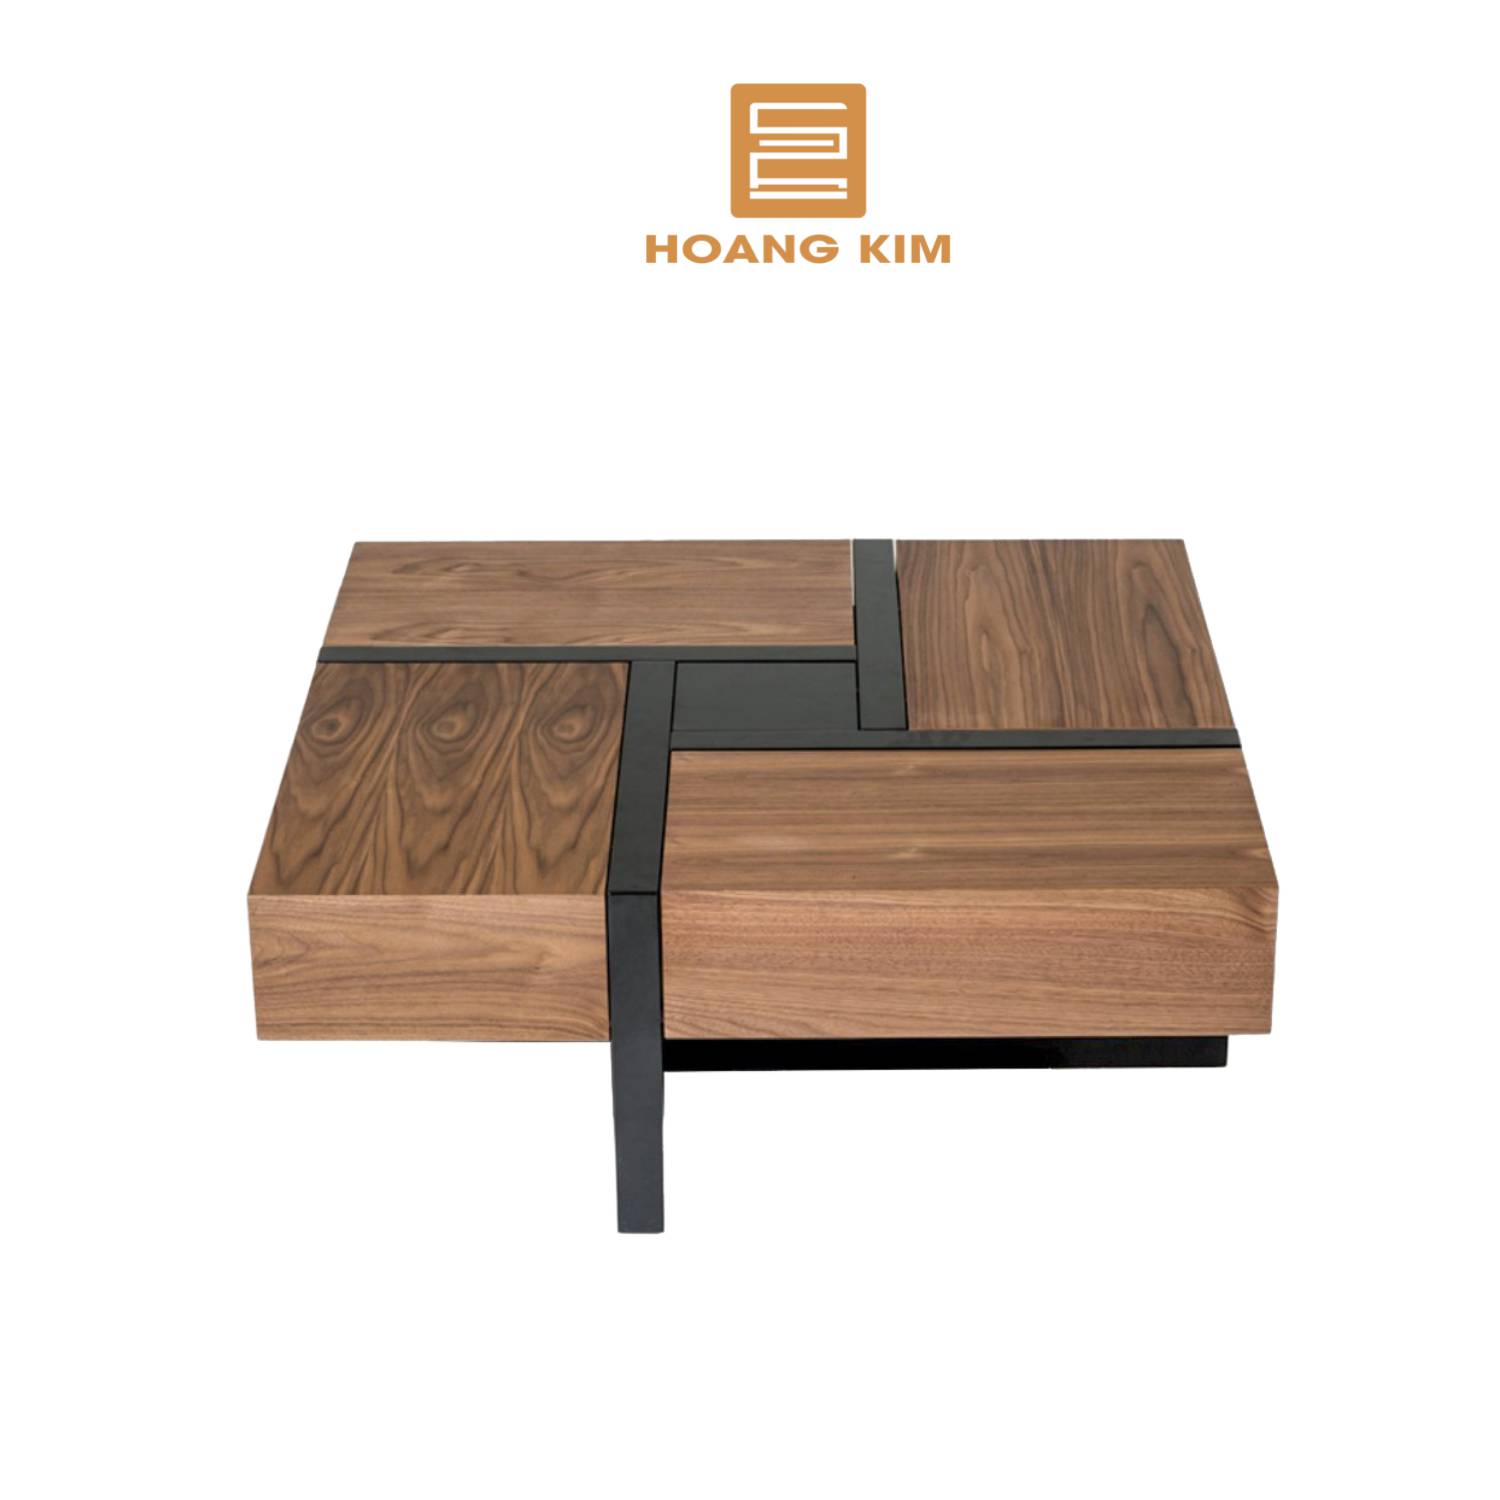 Bàn trà gỗ thông mình Decor Hoàng Kim, bàn gỗ cao cấp thiết kế Bắc Âu hiện đại